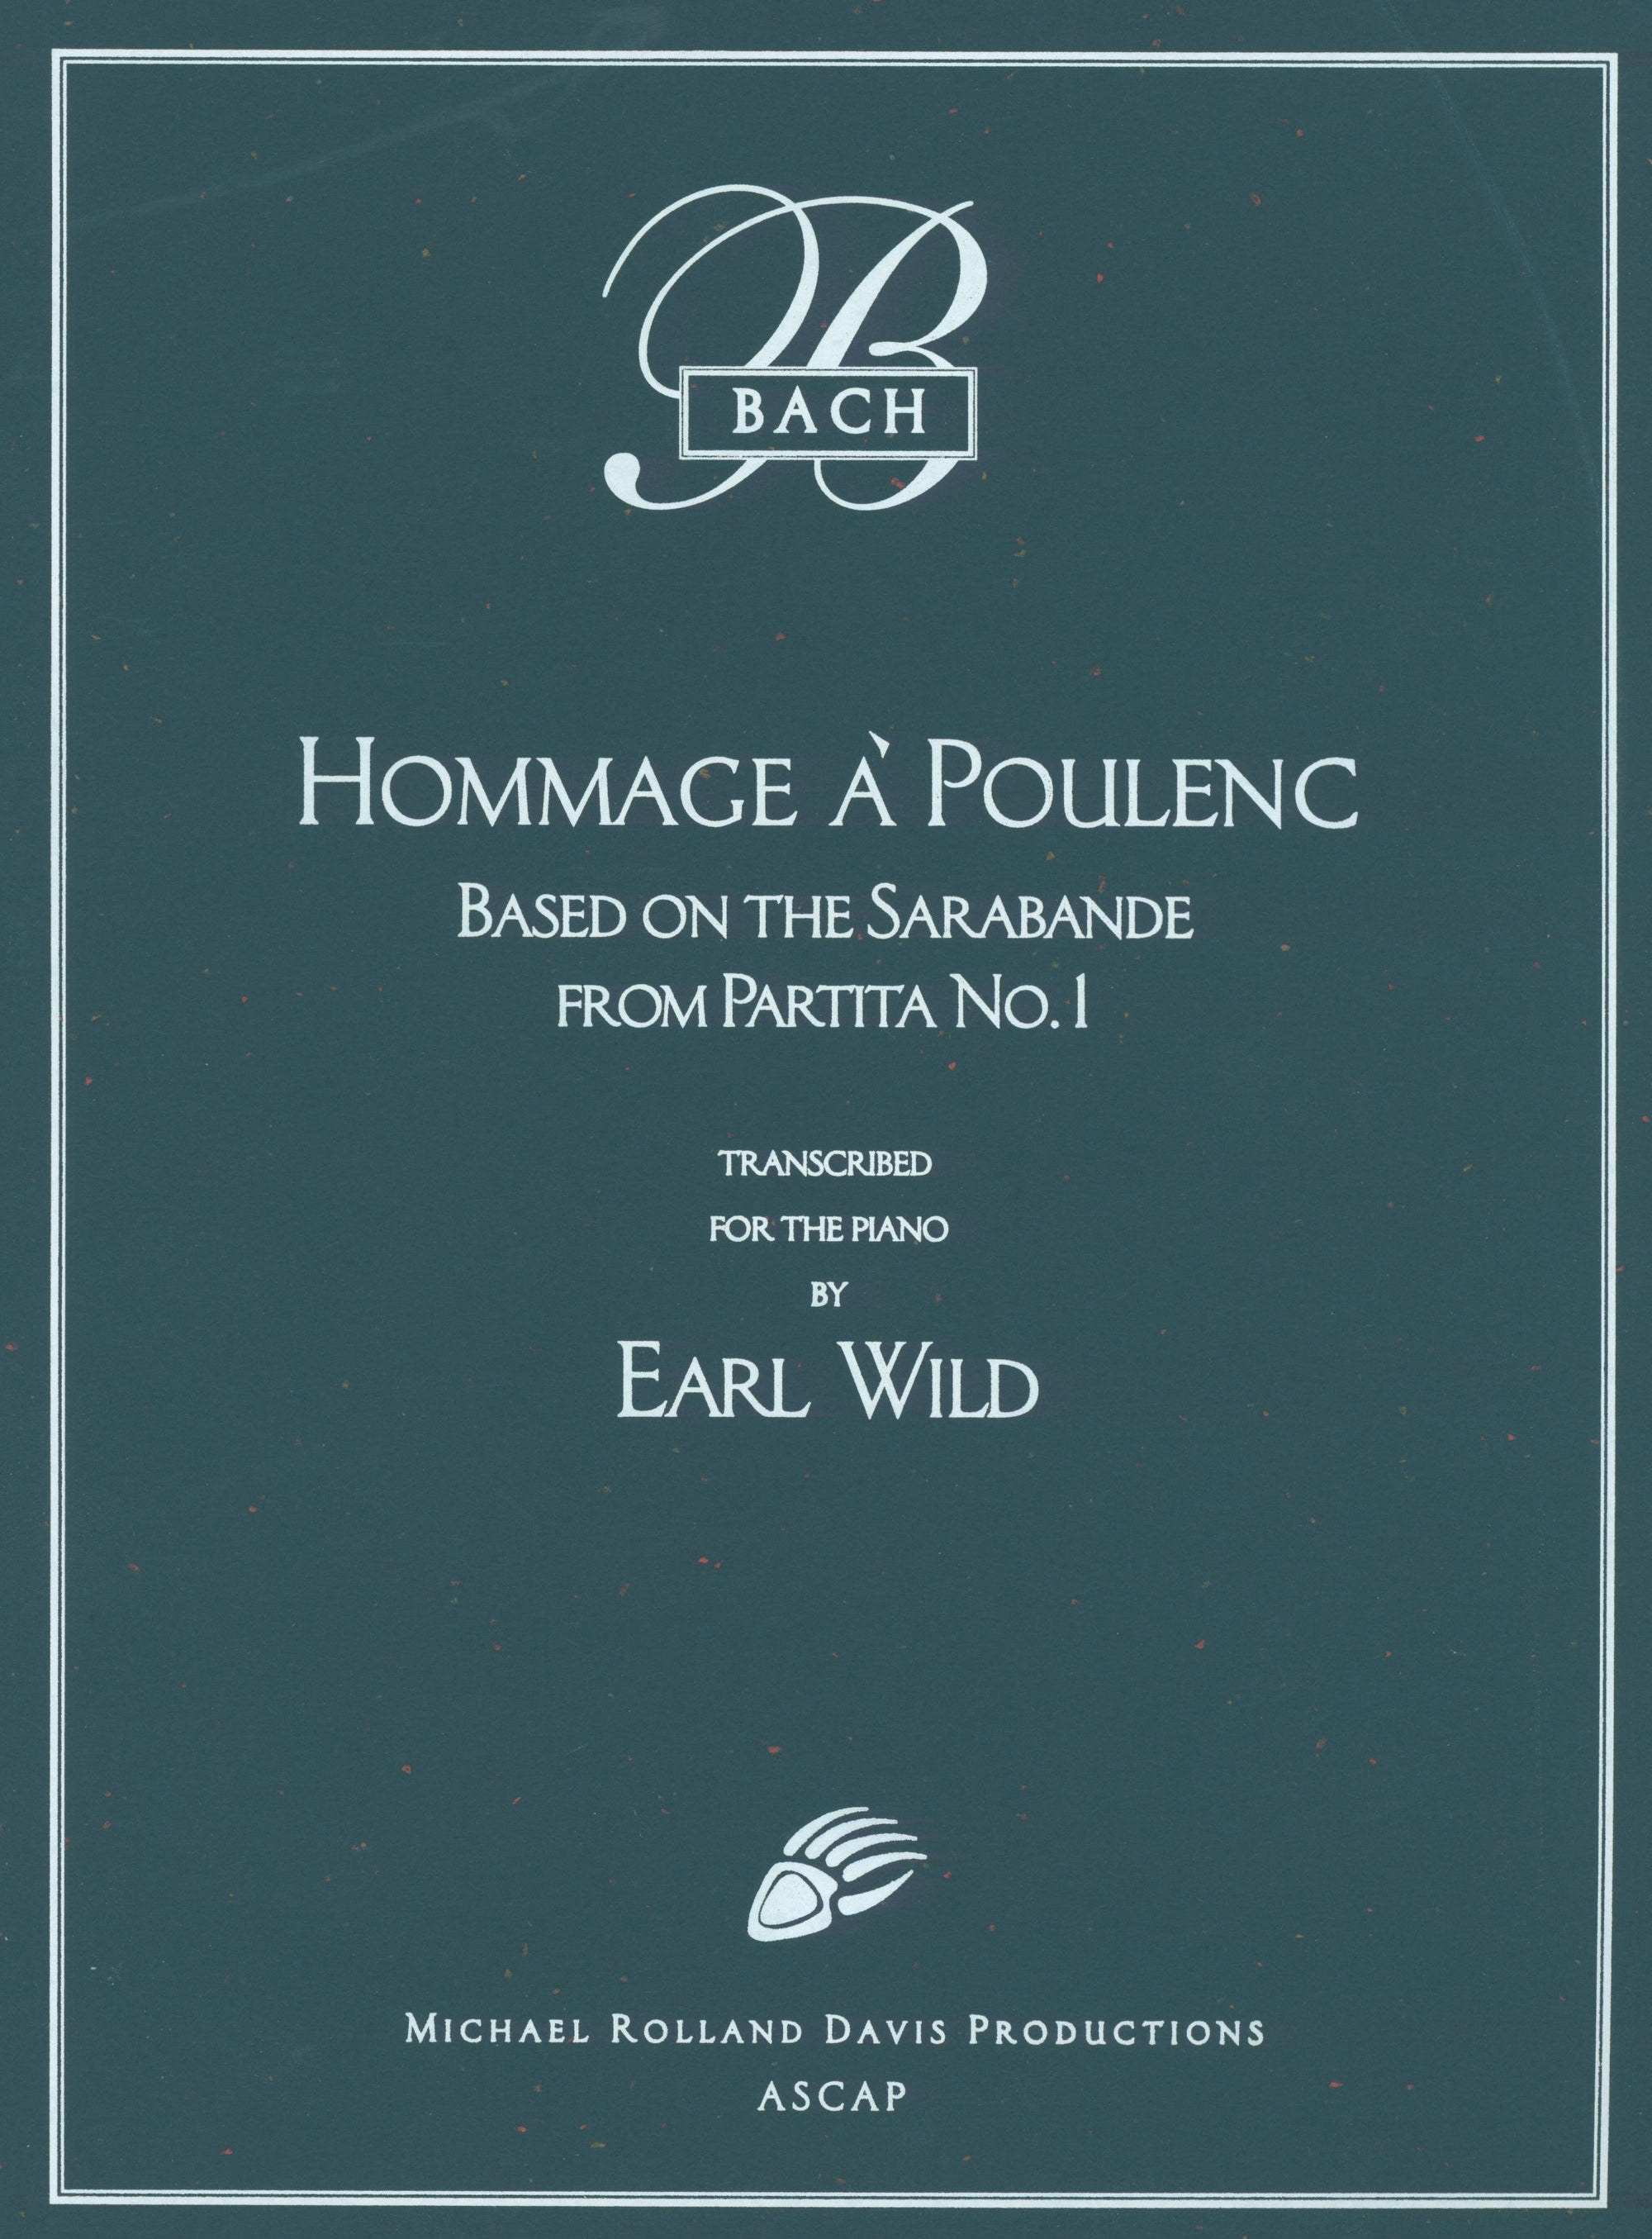 Bach-Wild: Hommage à Poulenc